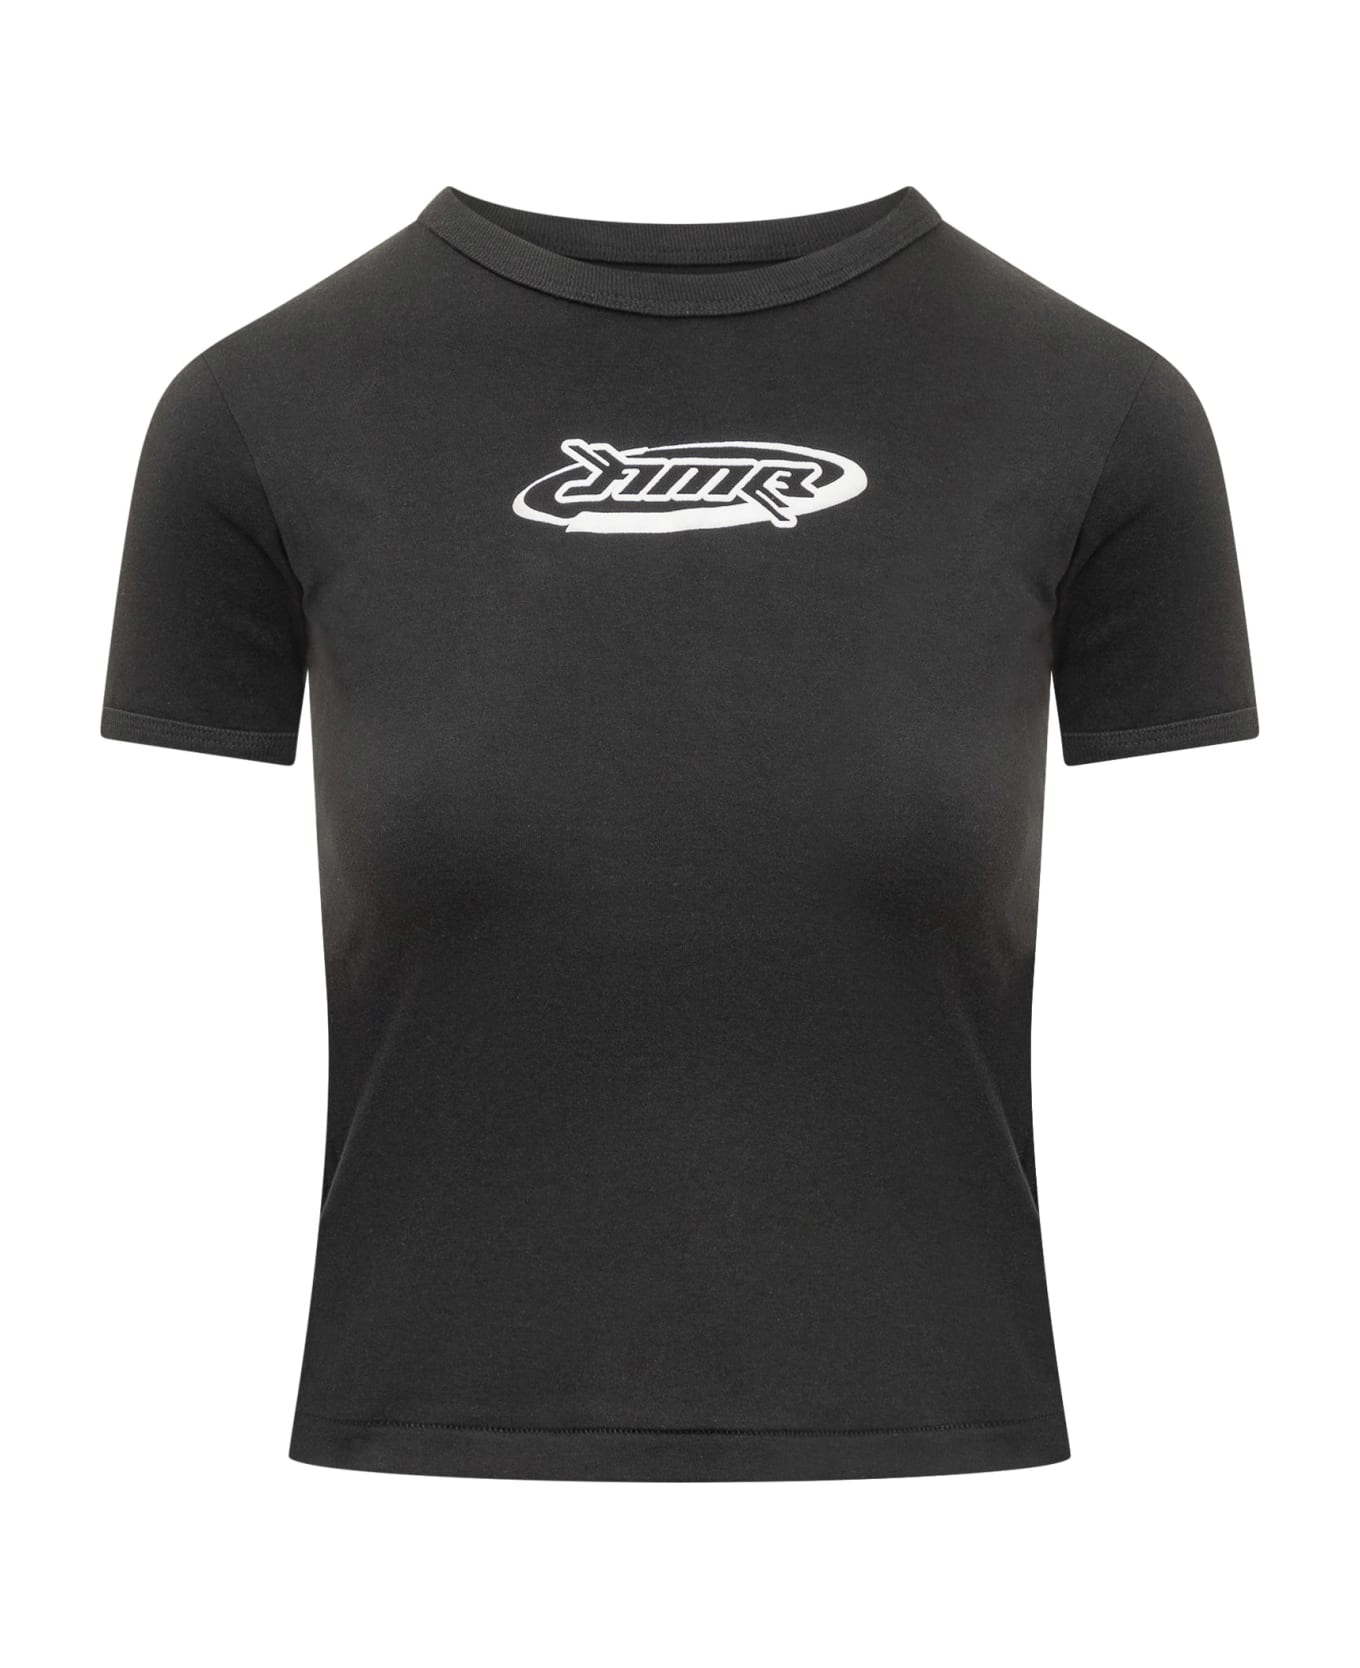 AMBUSH Graphic T-shirt - BLACK